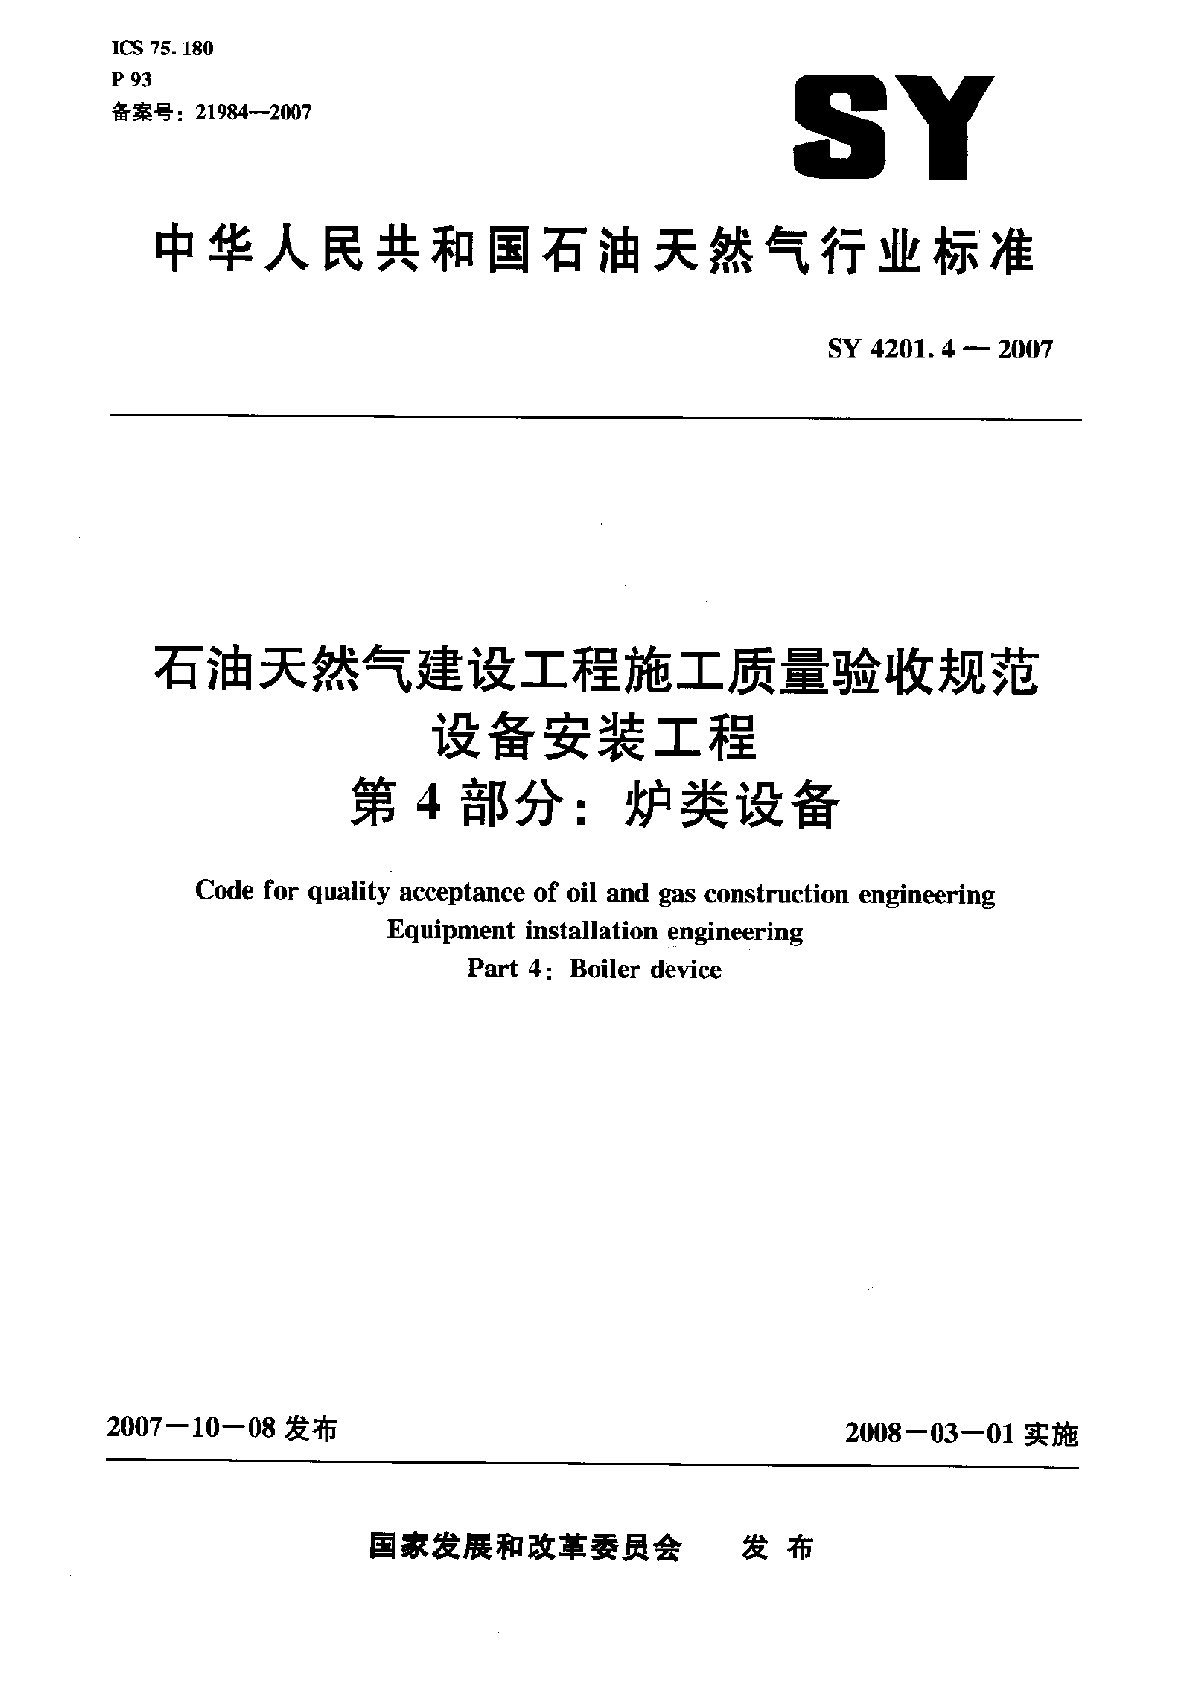 4炉类设备SY4201.4-2007.pdf